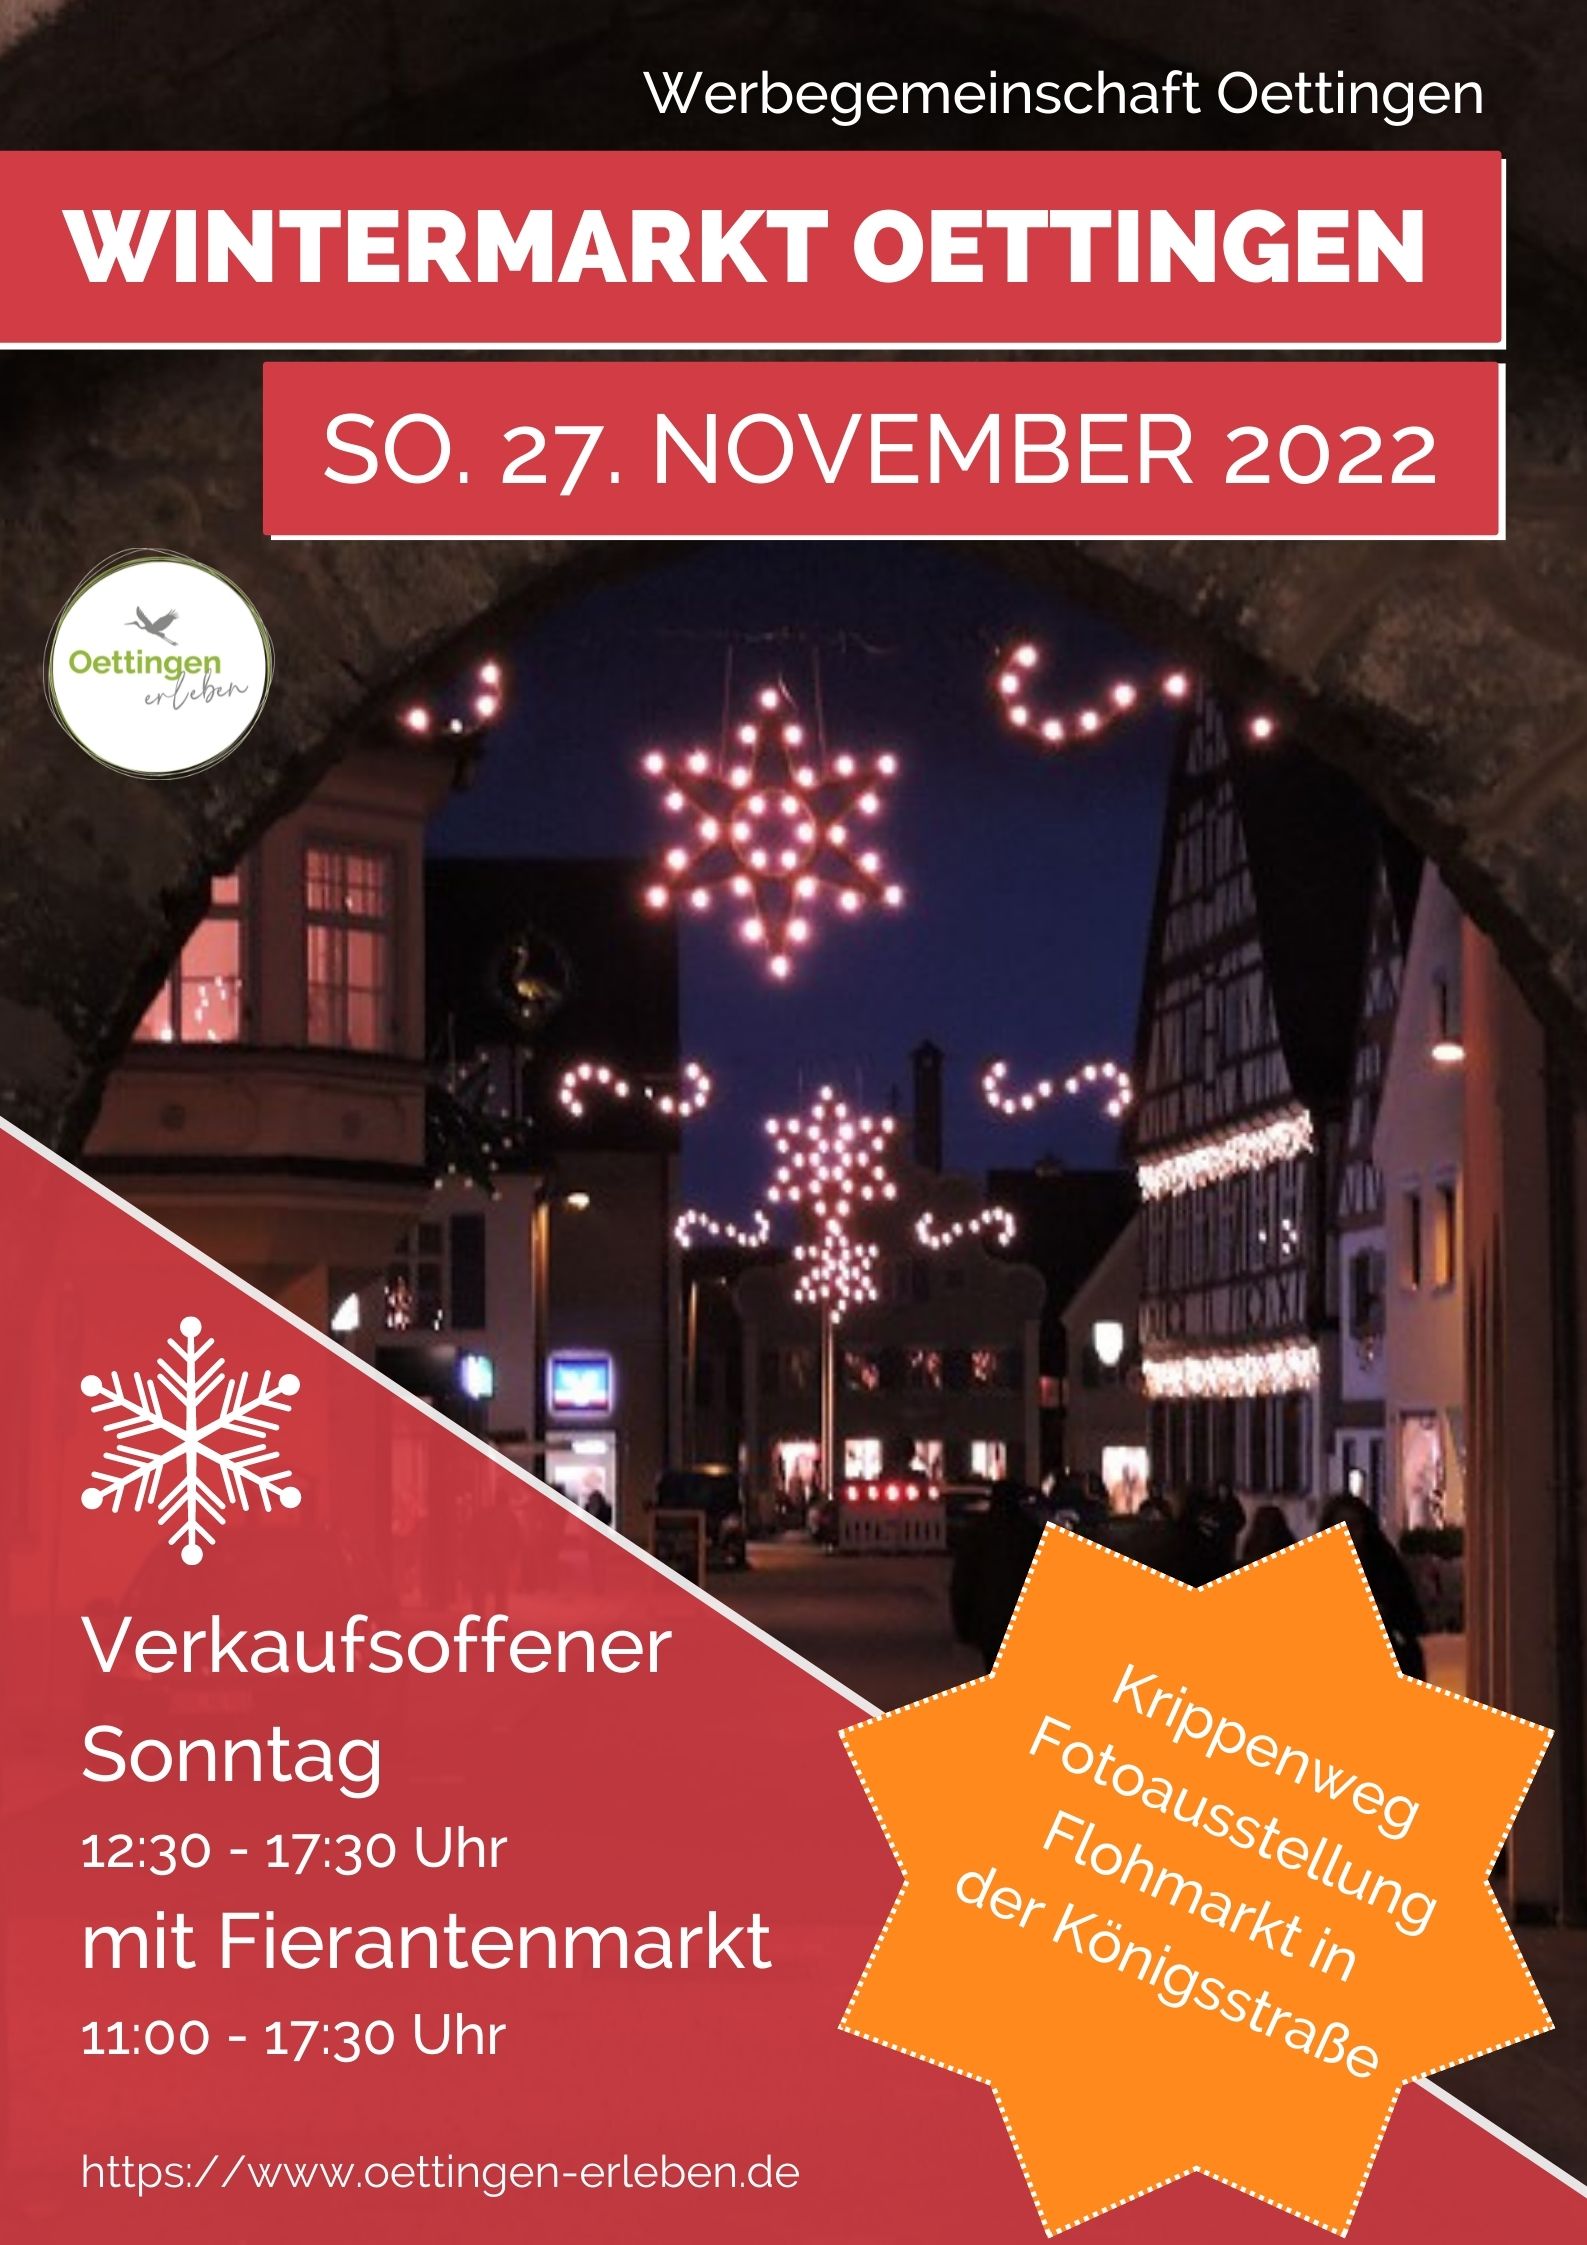 Wintermarkt am 27. November 2022 in Oettingen - gleichzeitig Christkindlesmarkt im Museumshof